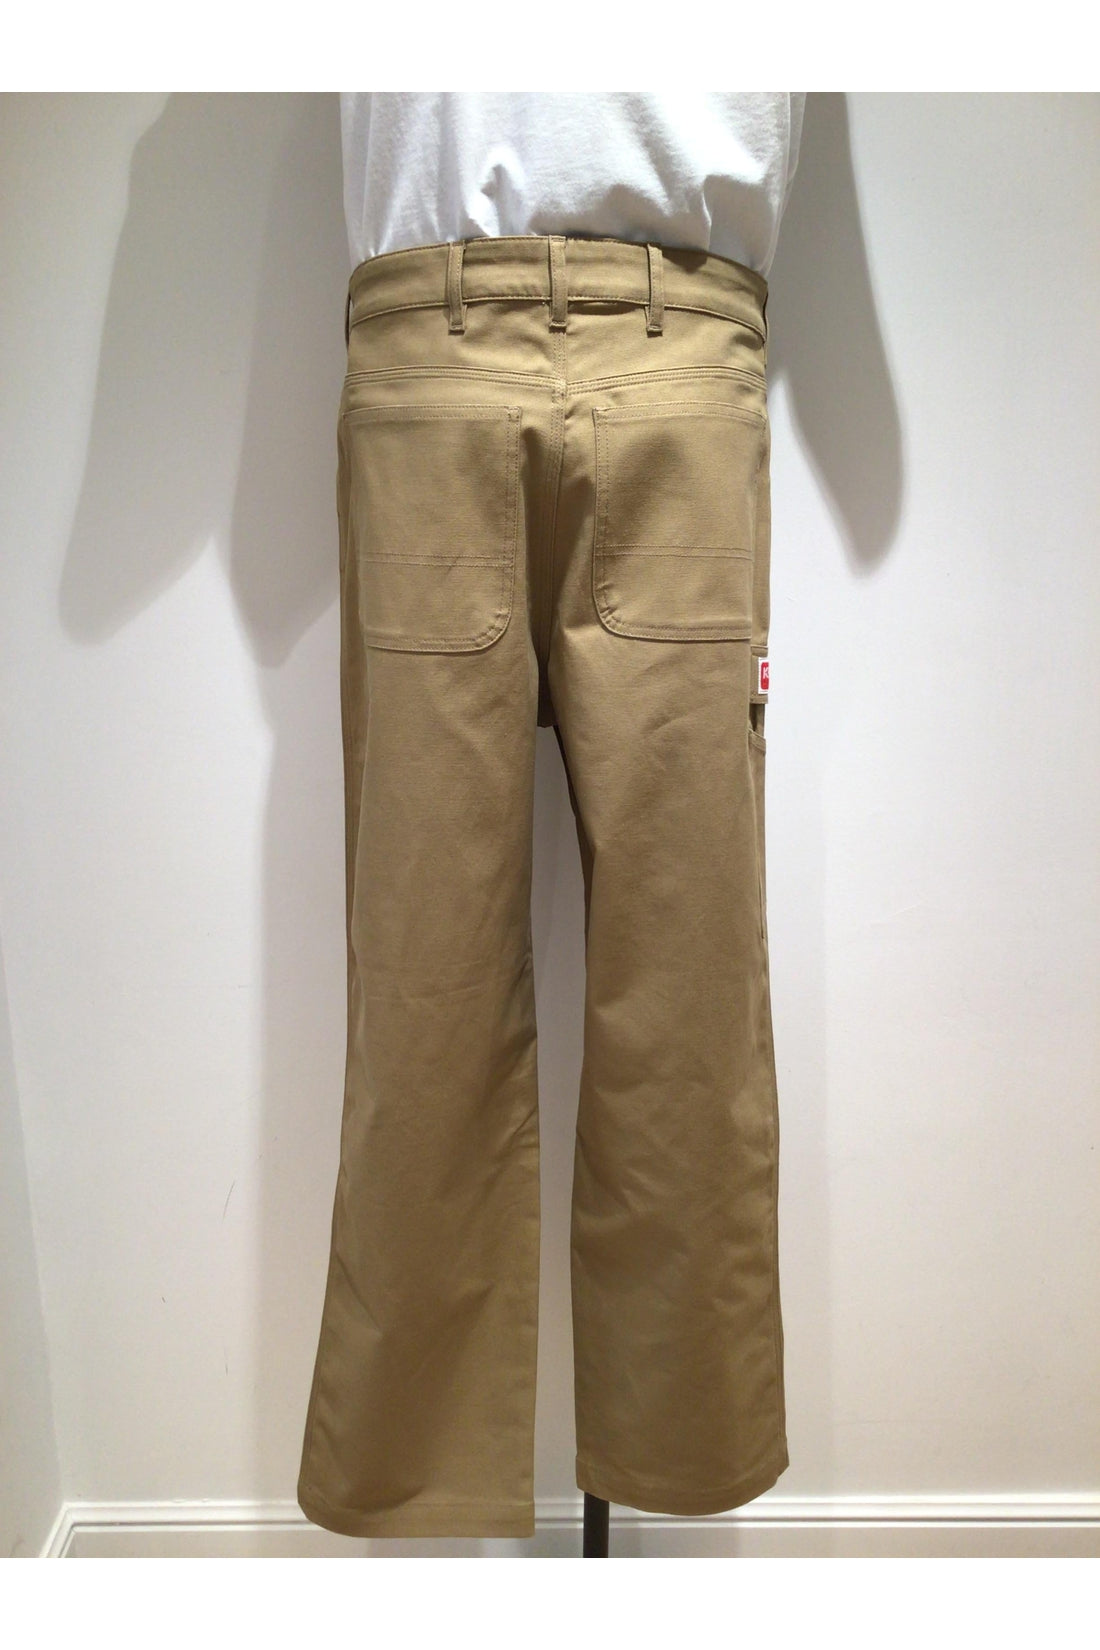 Kenzo-OUTLET-SALE-Cotton cargo-trousers-ARCHIVIST